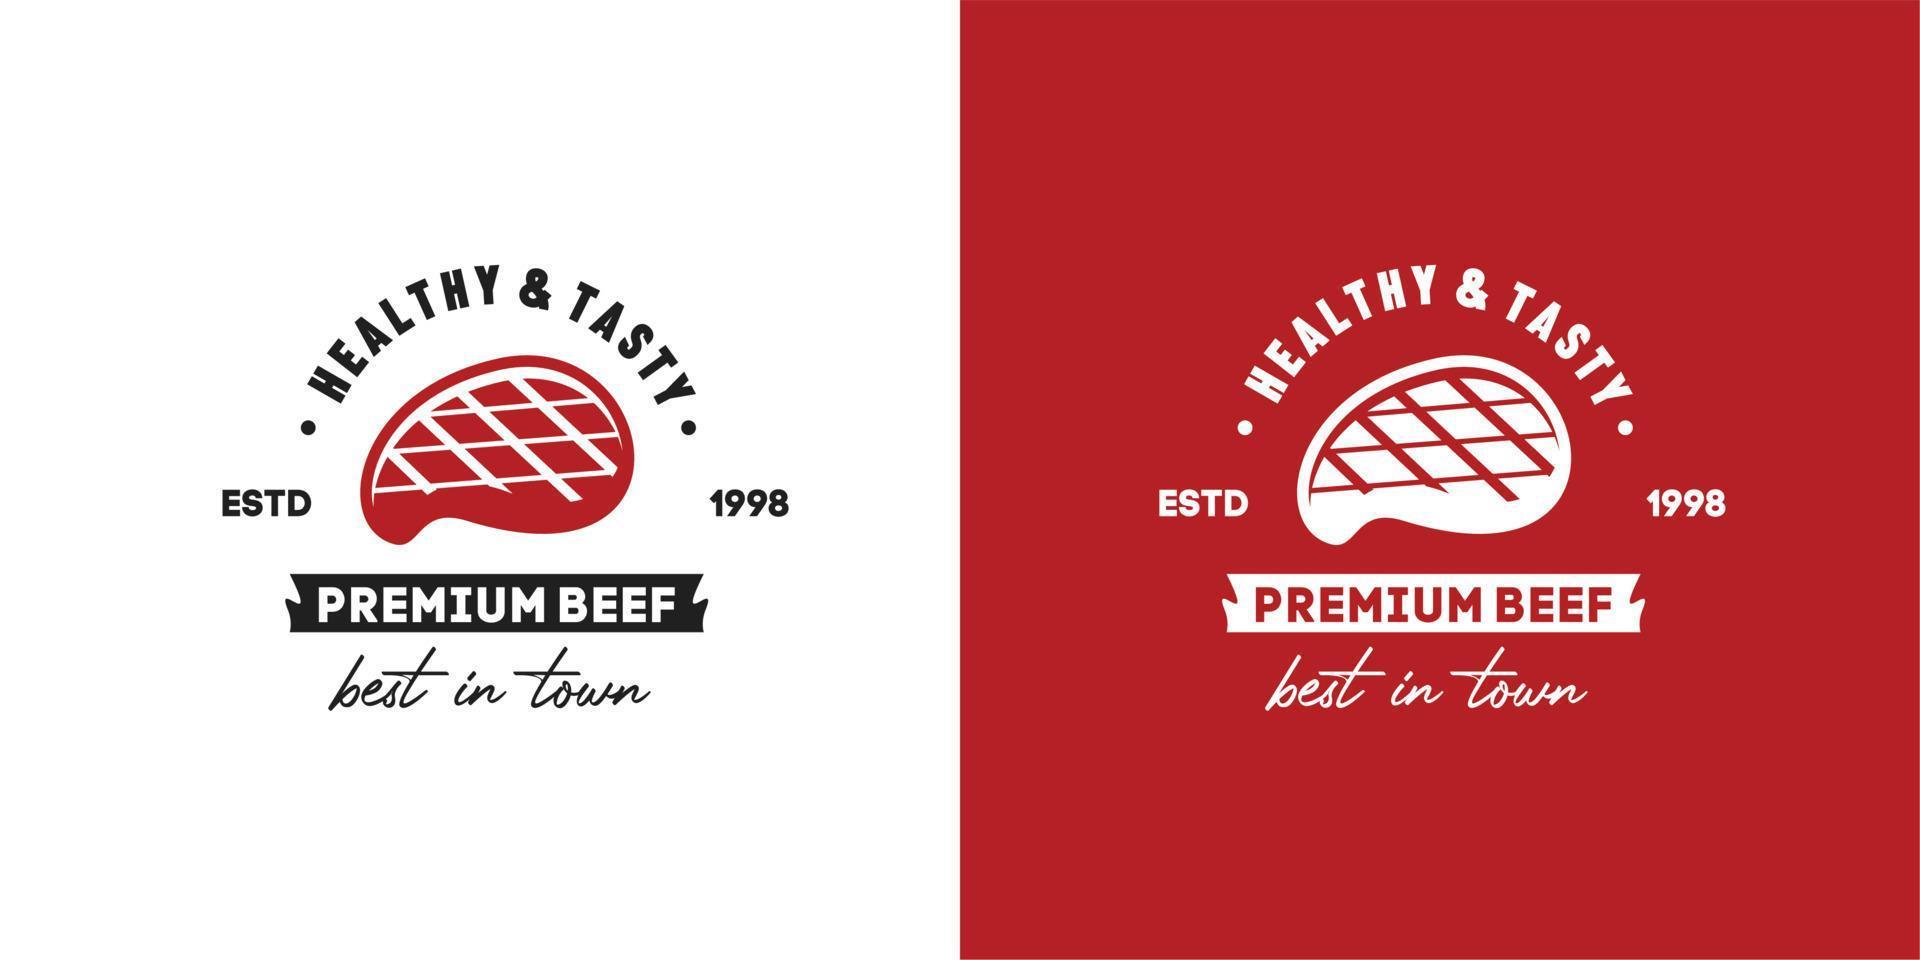 Illustrationsvektorgrafik von Slice-Rindfleisch-Grillsteak gut für Steakhouse-Barbecue und Grill-Vintage-Logo vektor